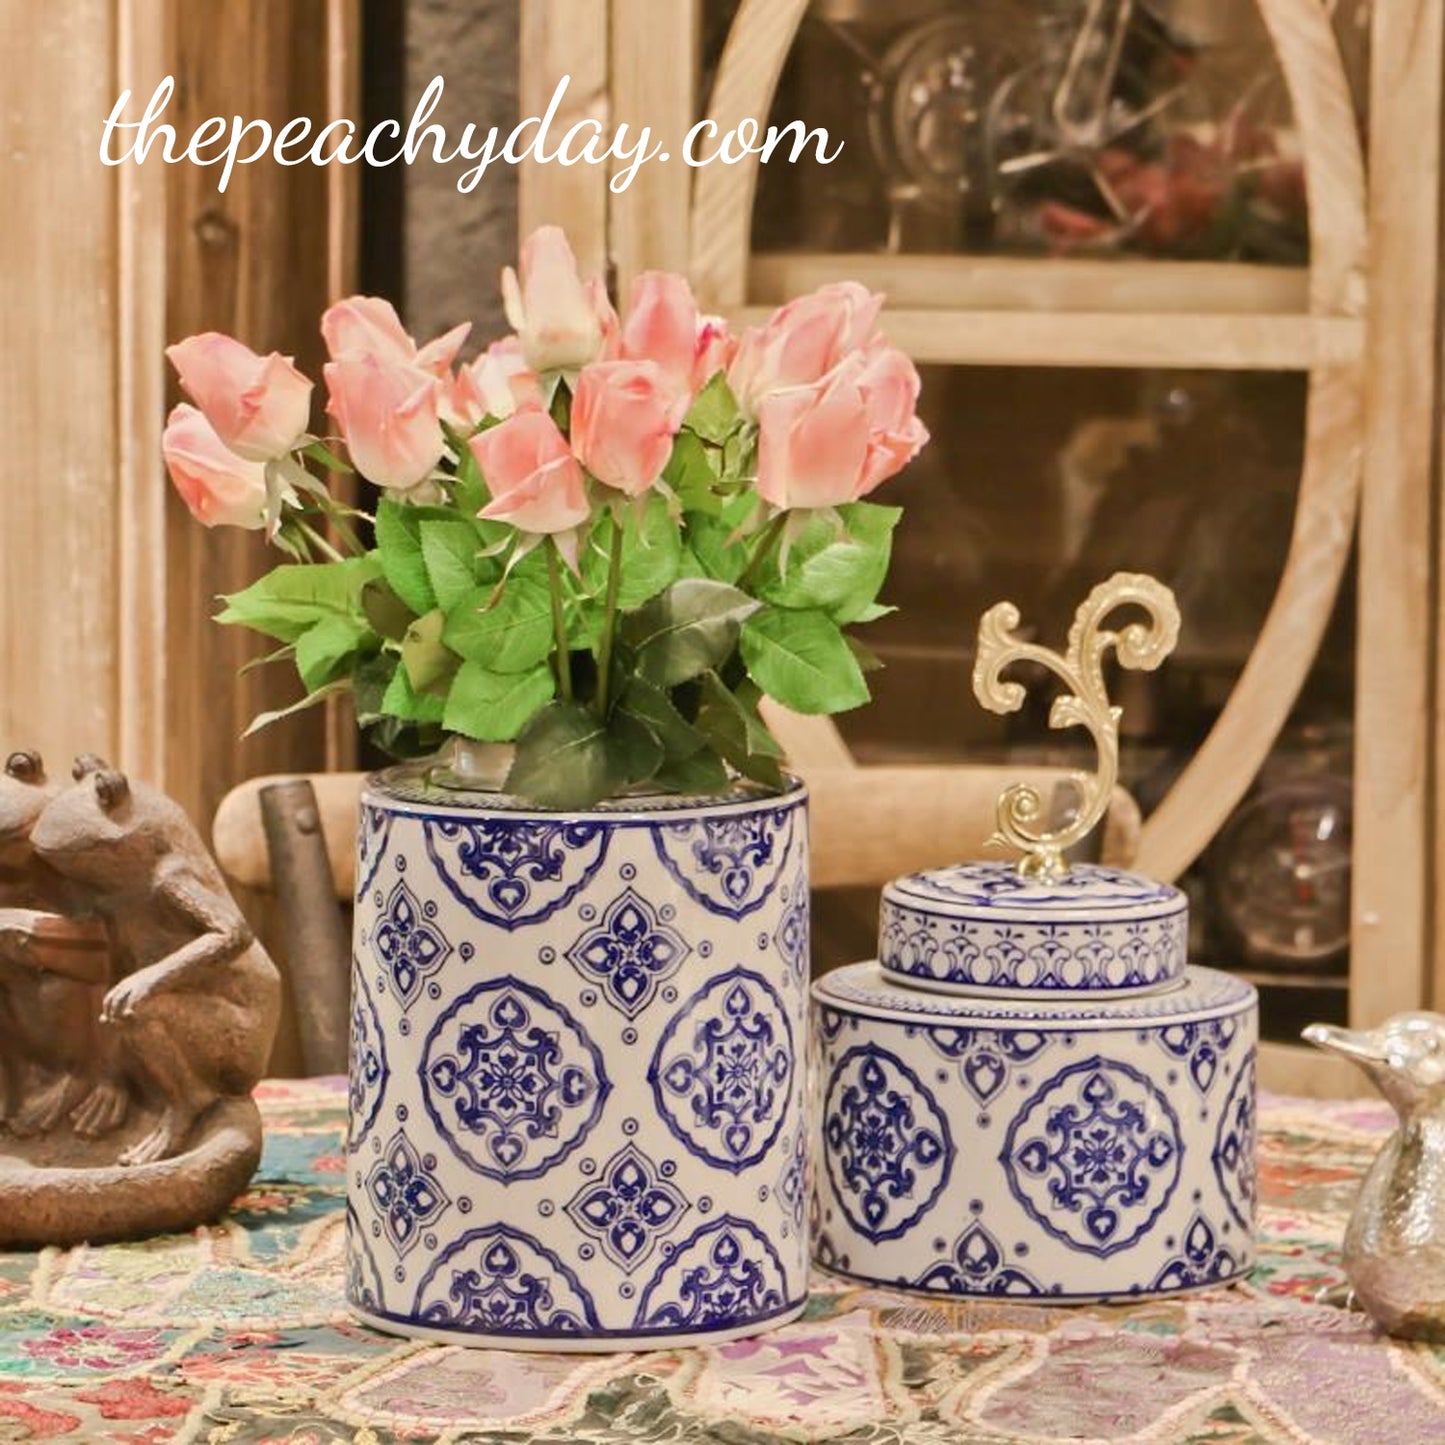 Blue-and-White Porcelain Vase